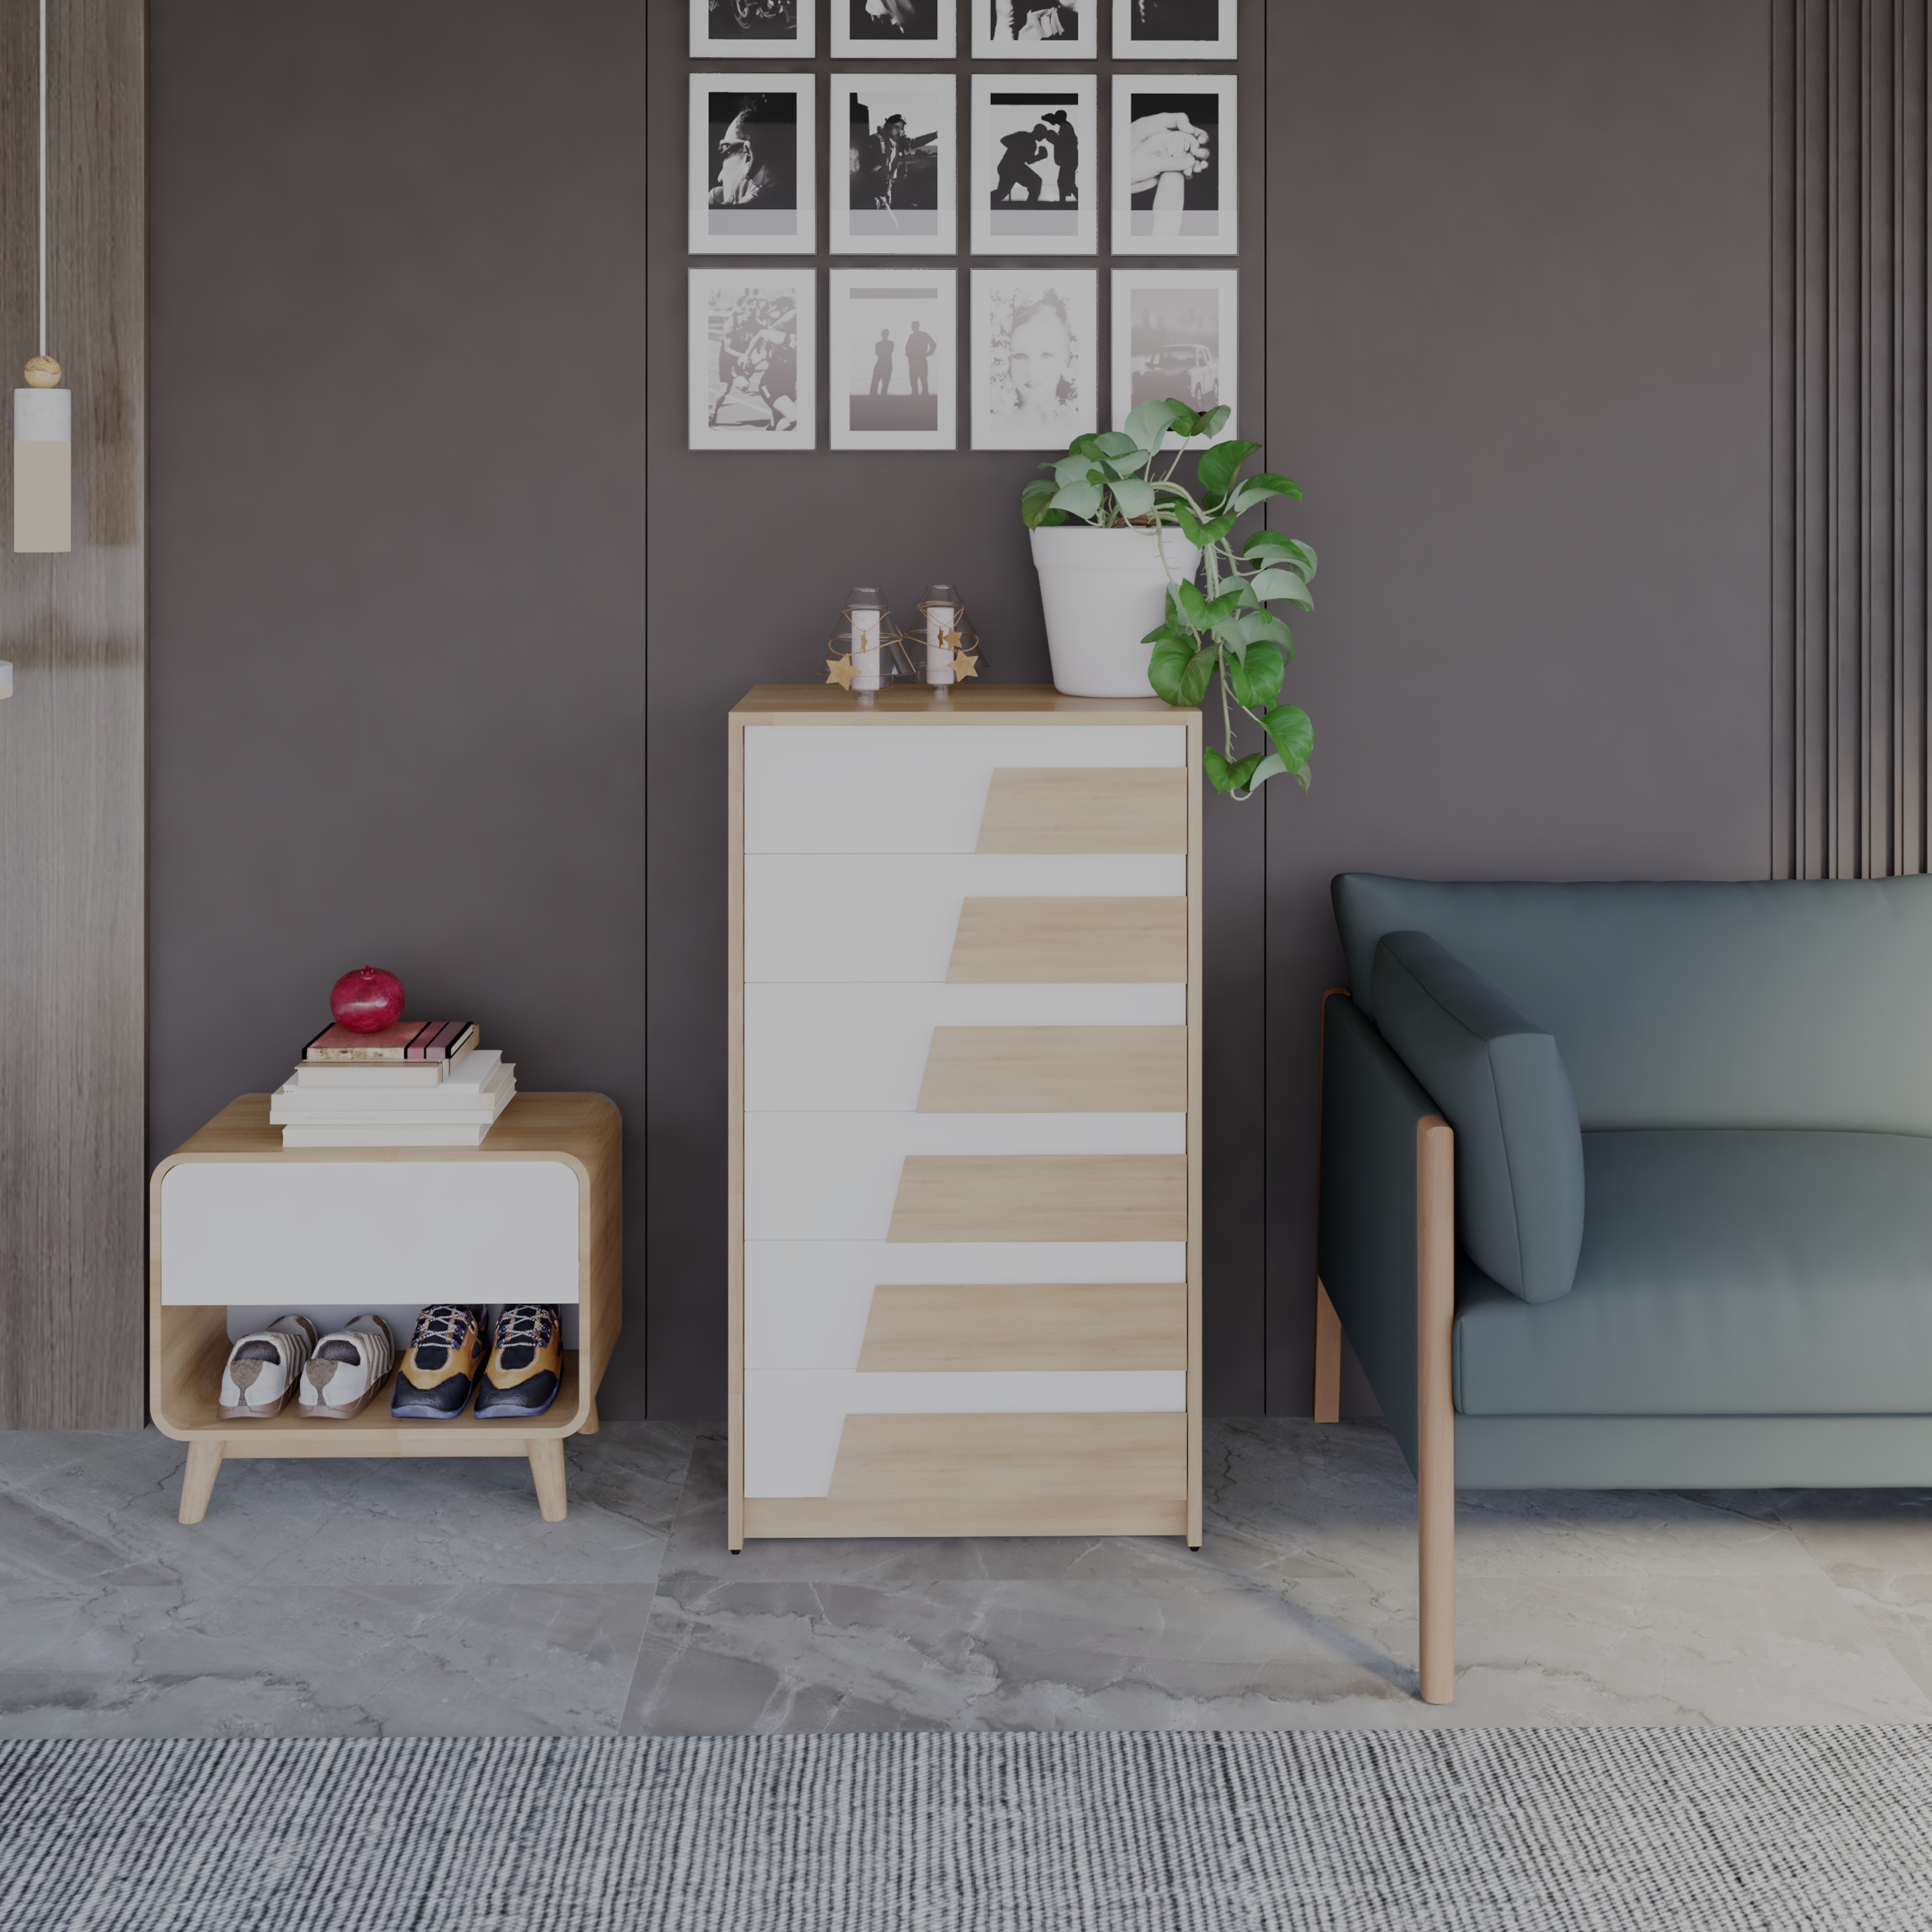 [Happy Home Furniture] PONIX, Tủ lưu trữ 6 ngăn kéo, 60cm x 45cm x 106cm ( DxRxC), THK_111